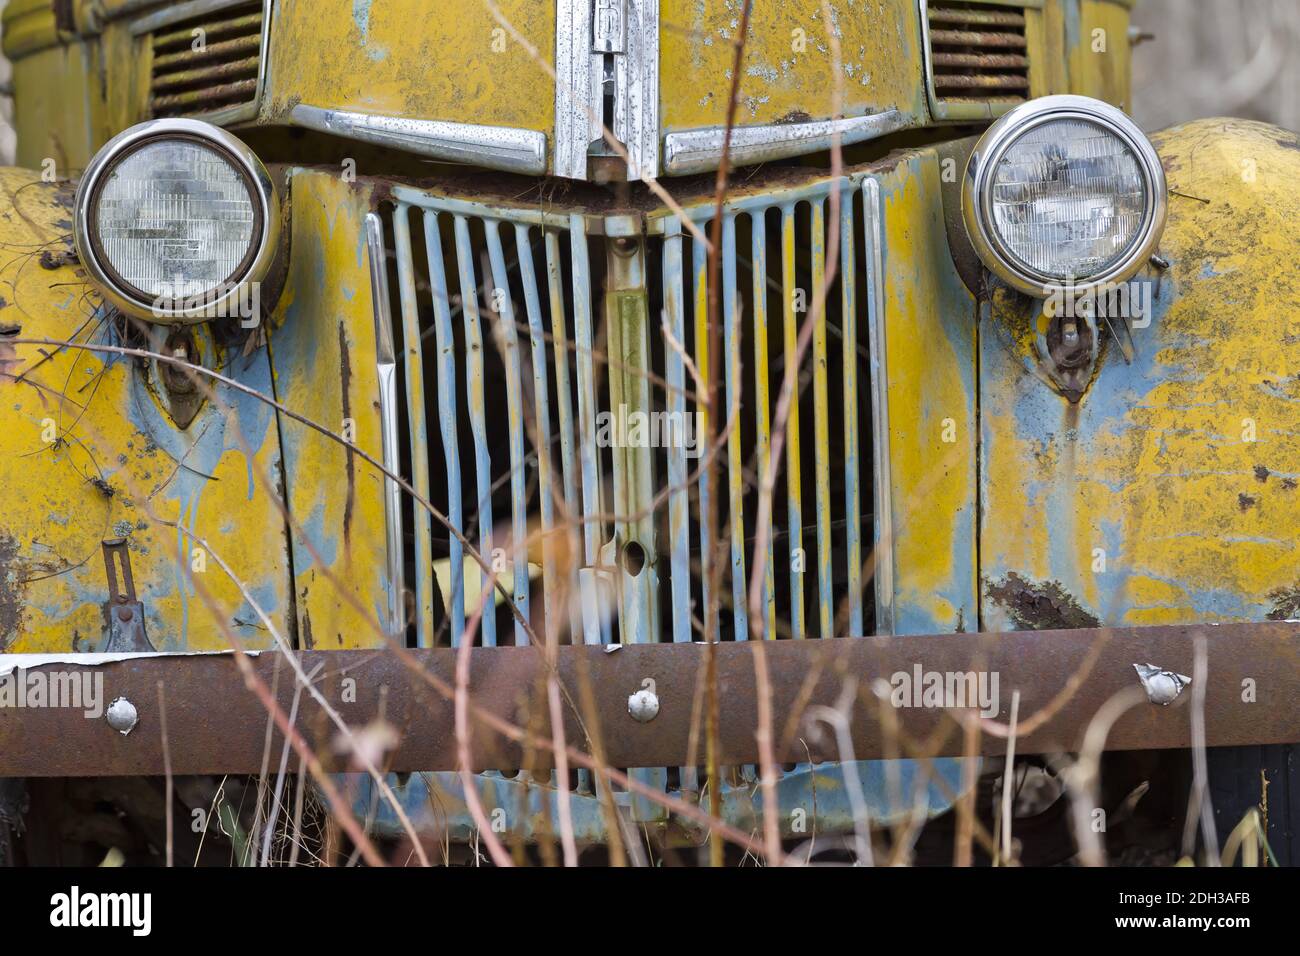 Ein verlassene Rusty Car sitzt allein auf EINEM Feld Stockfoto